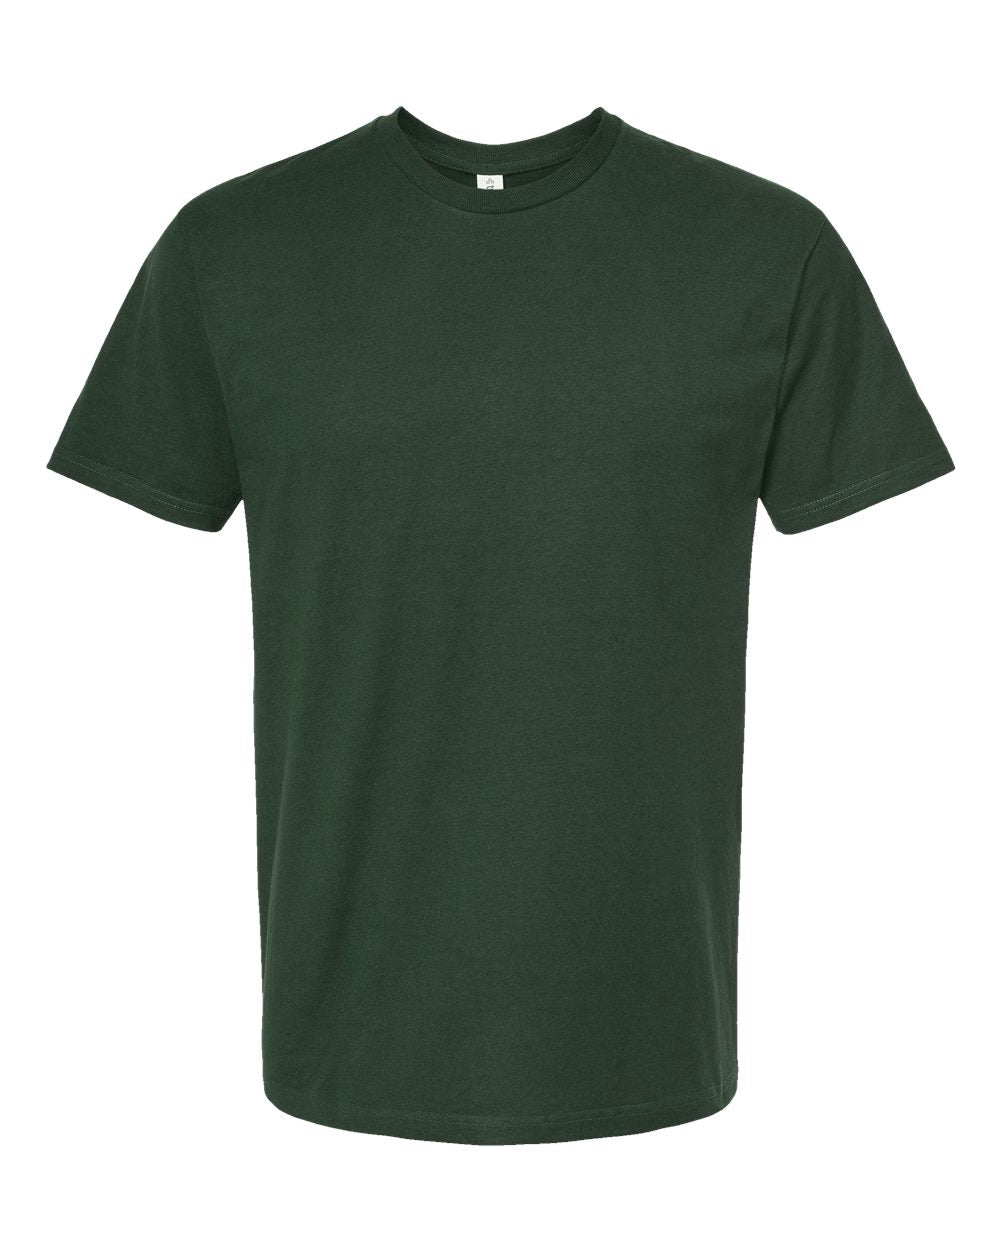 Tultex - Unisex Heavyweight Jersey T-Shirt - 290